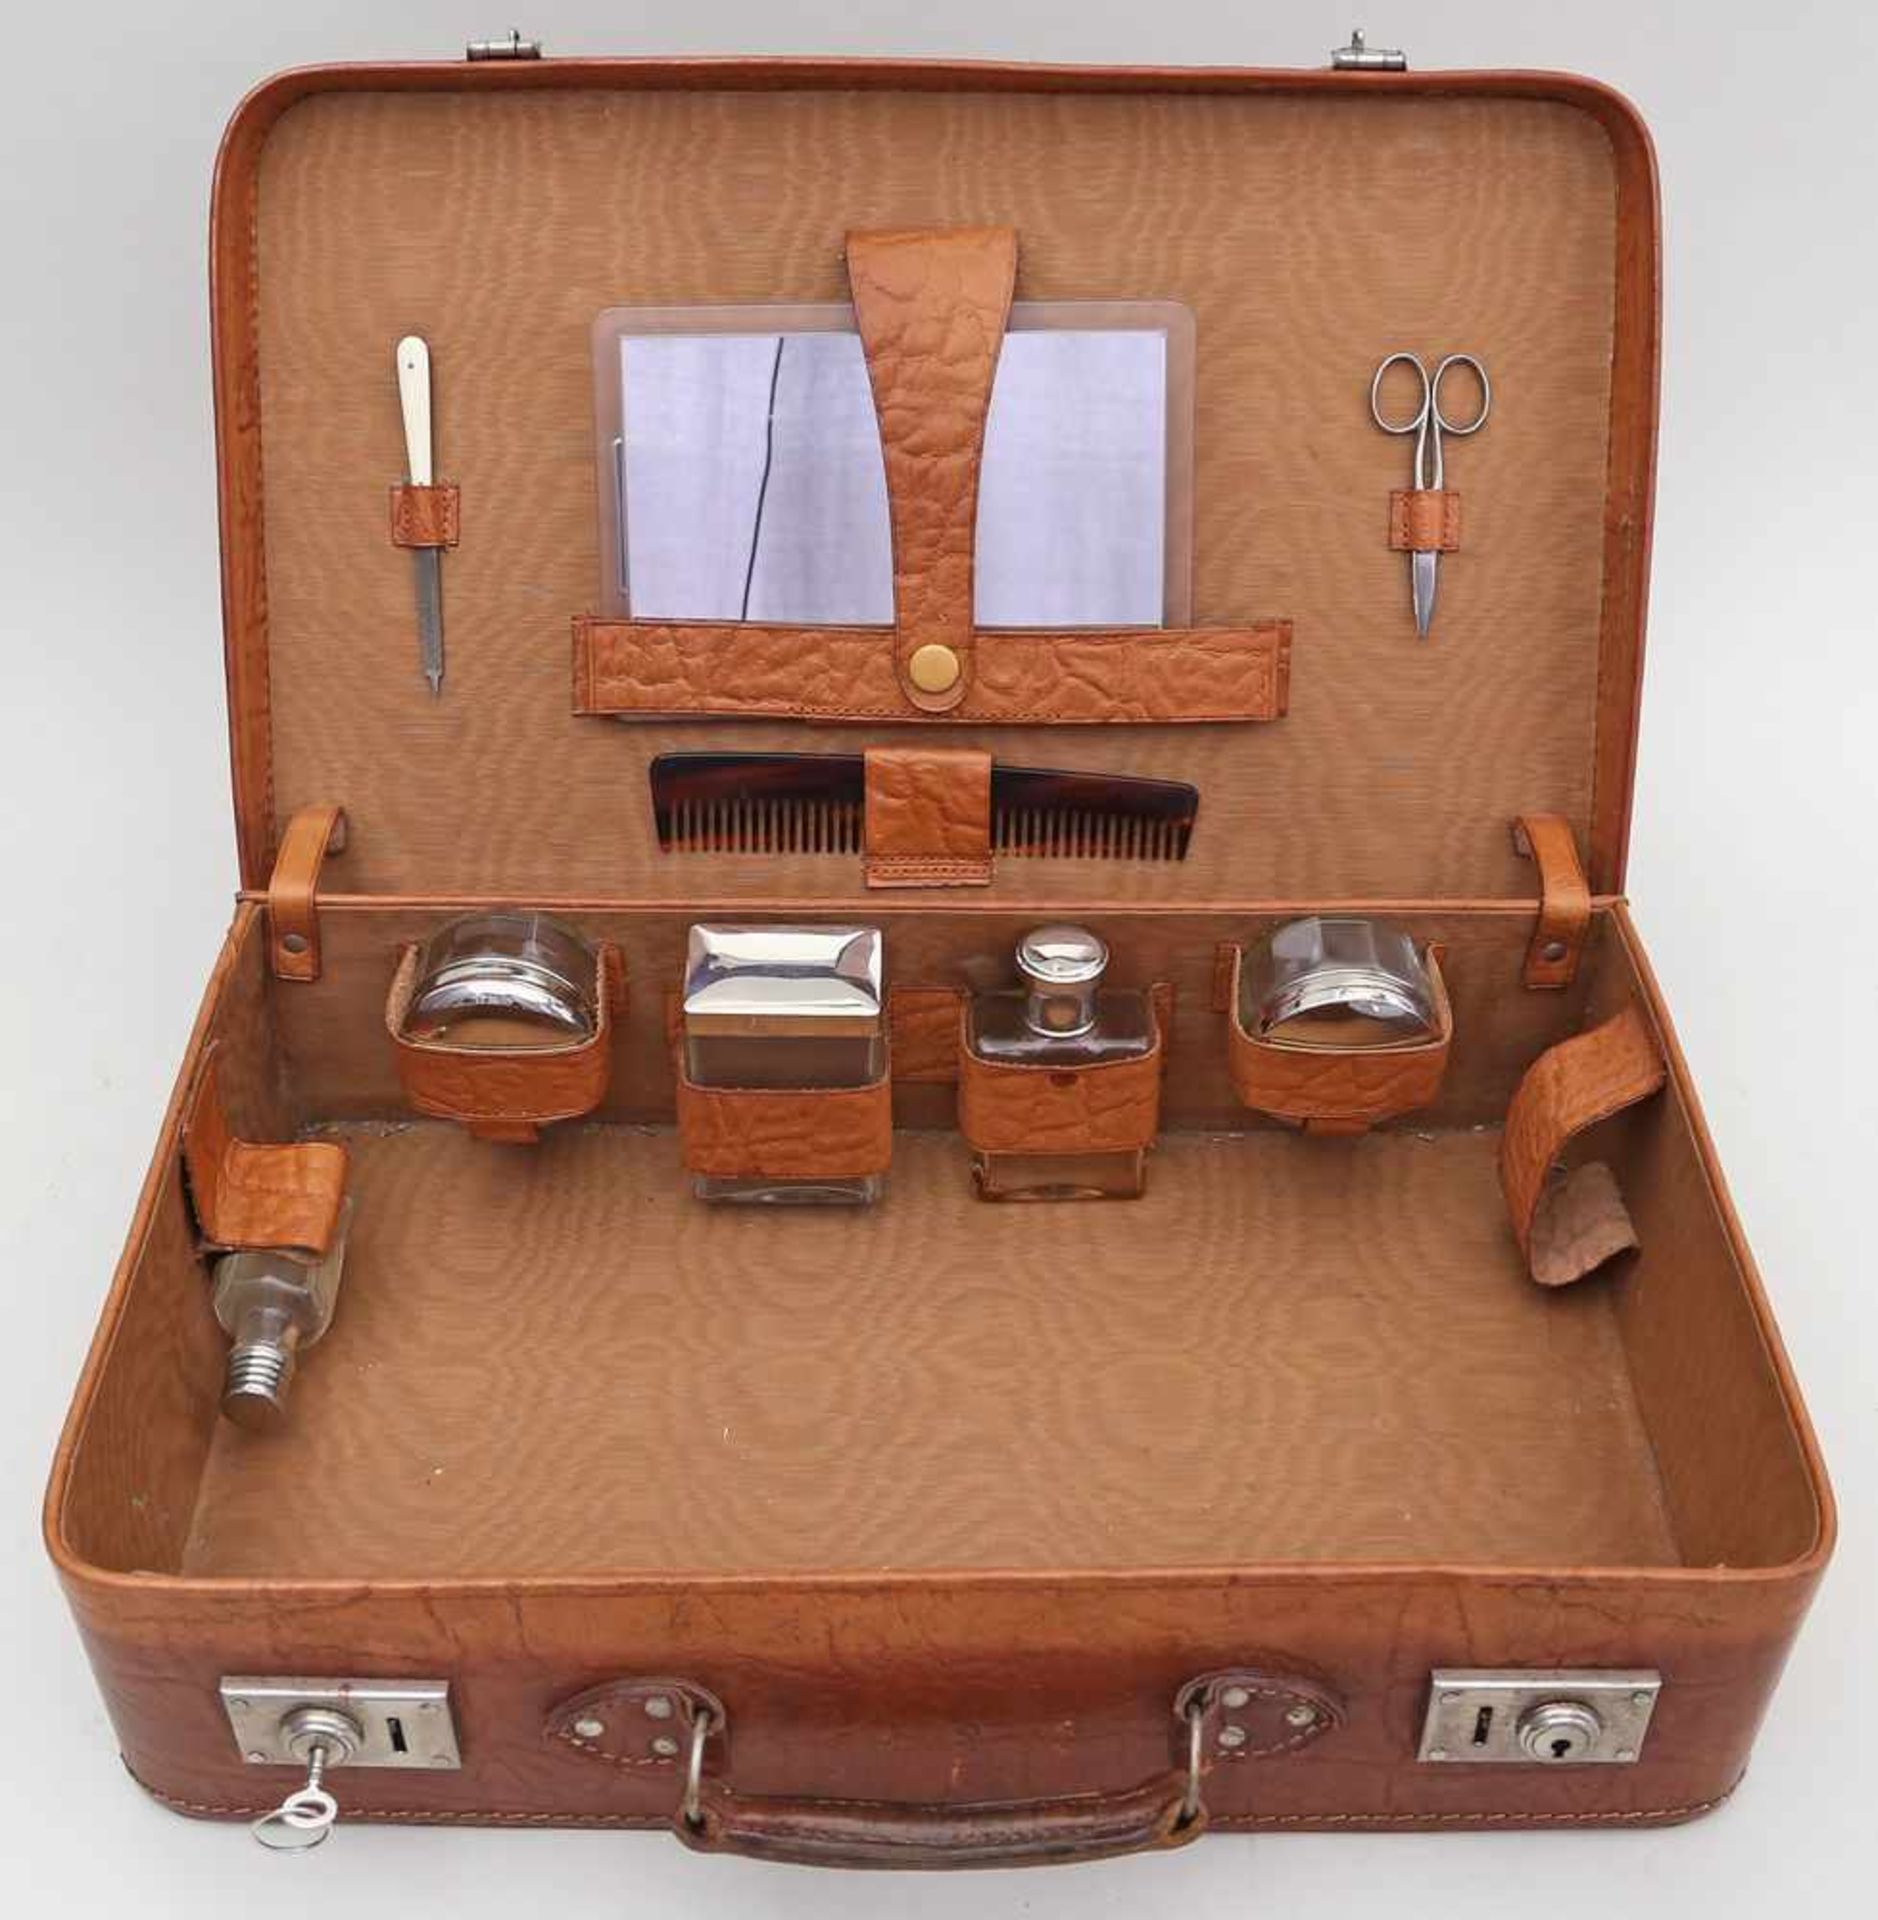 Koffer mit Reisetoilette.Braunes Kunstleder. Innen mit 9 verschiedenen Utensilien. Schlüssel